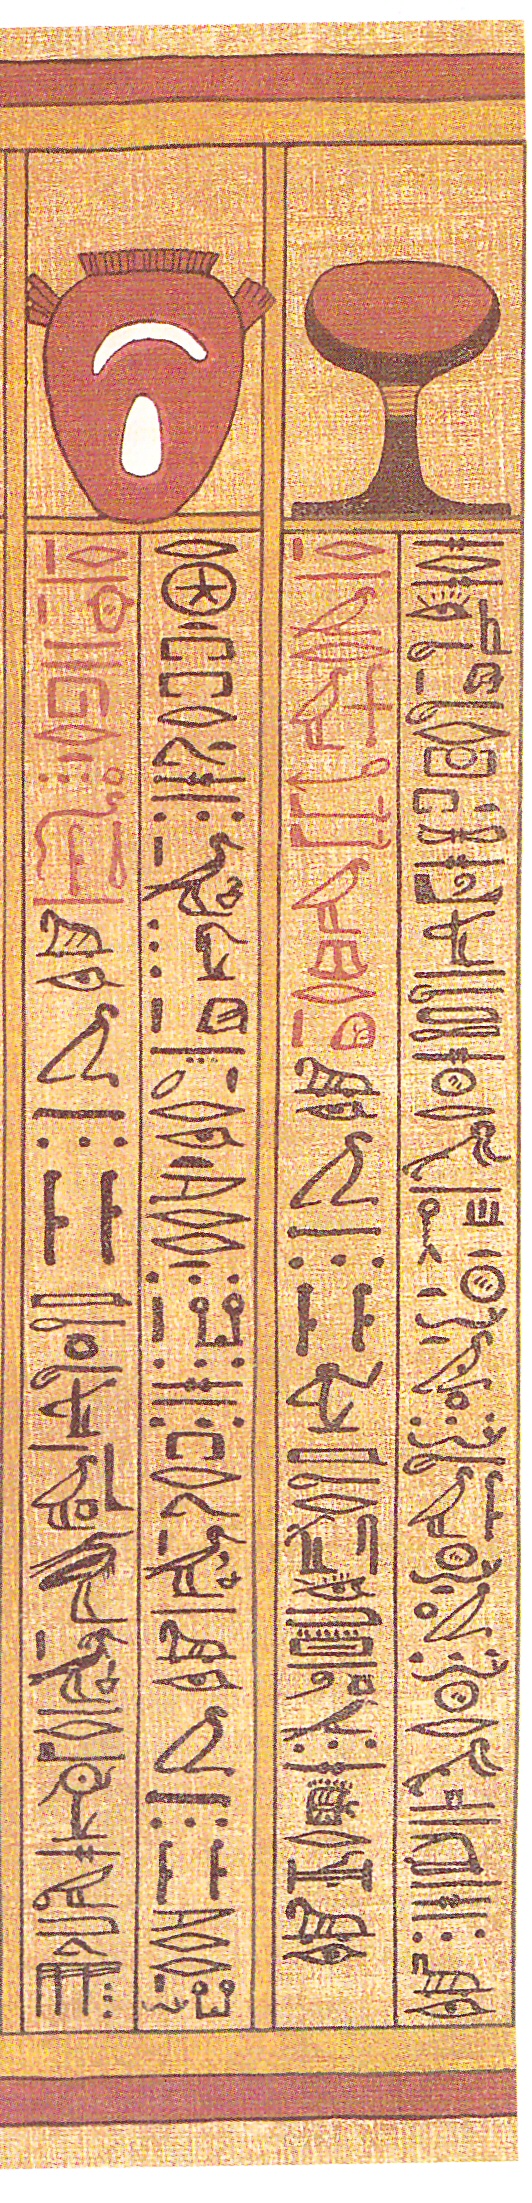 Formule de l'appuie-tête, papyrus d'Any